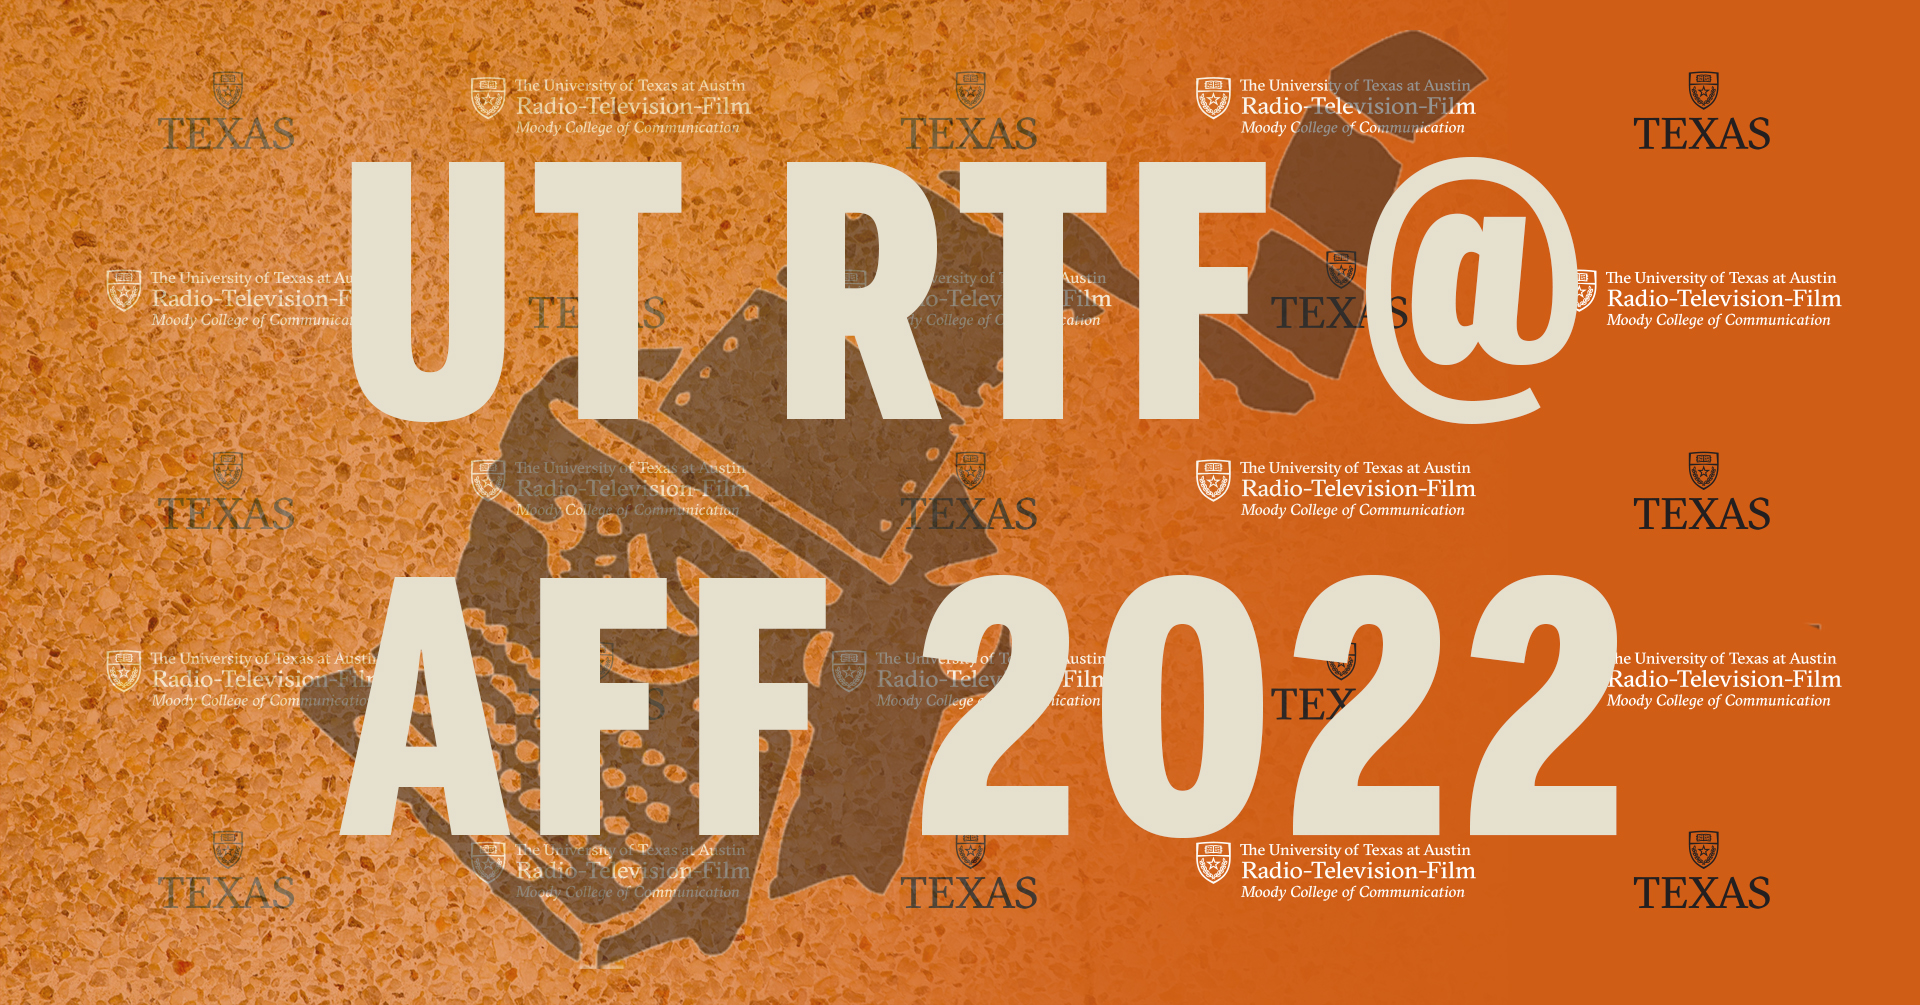 UT RTF at AFF 2022